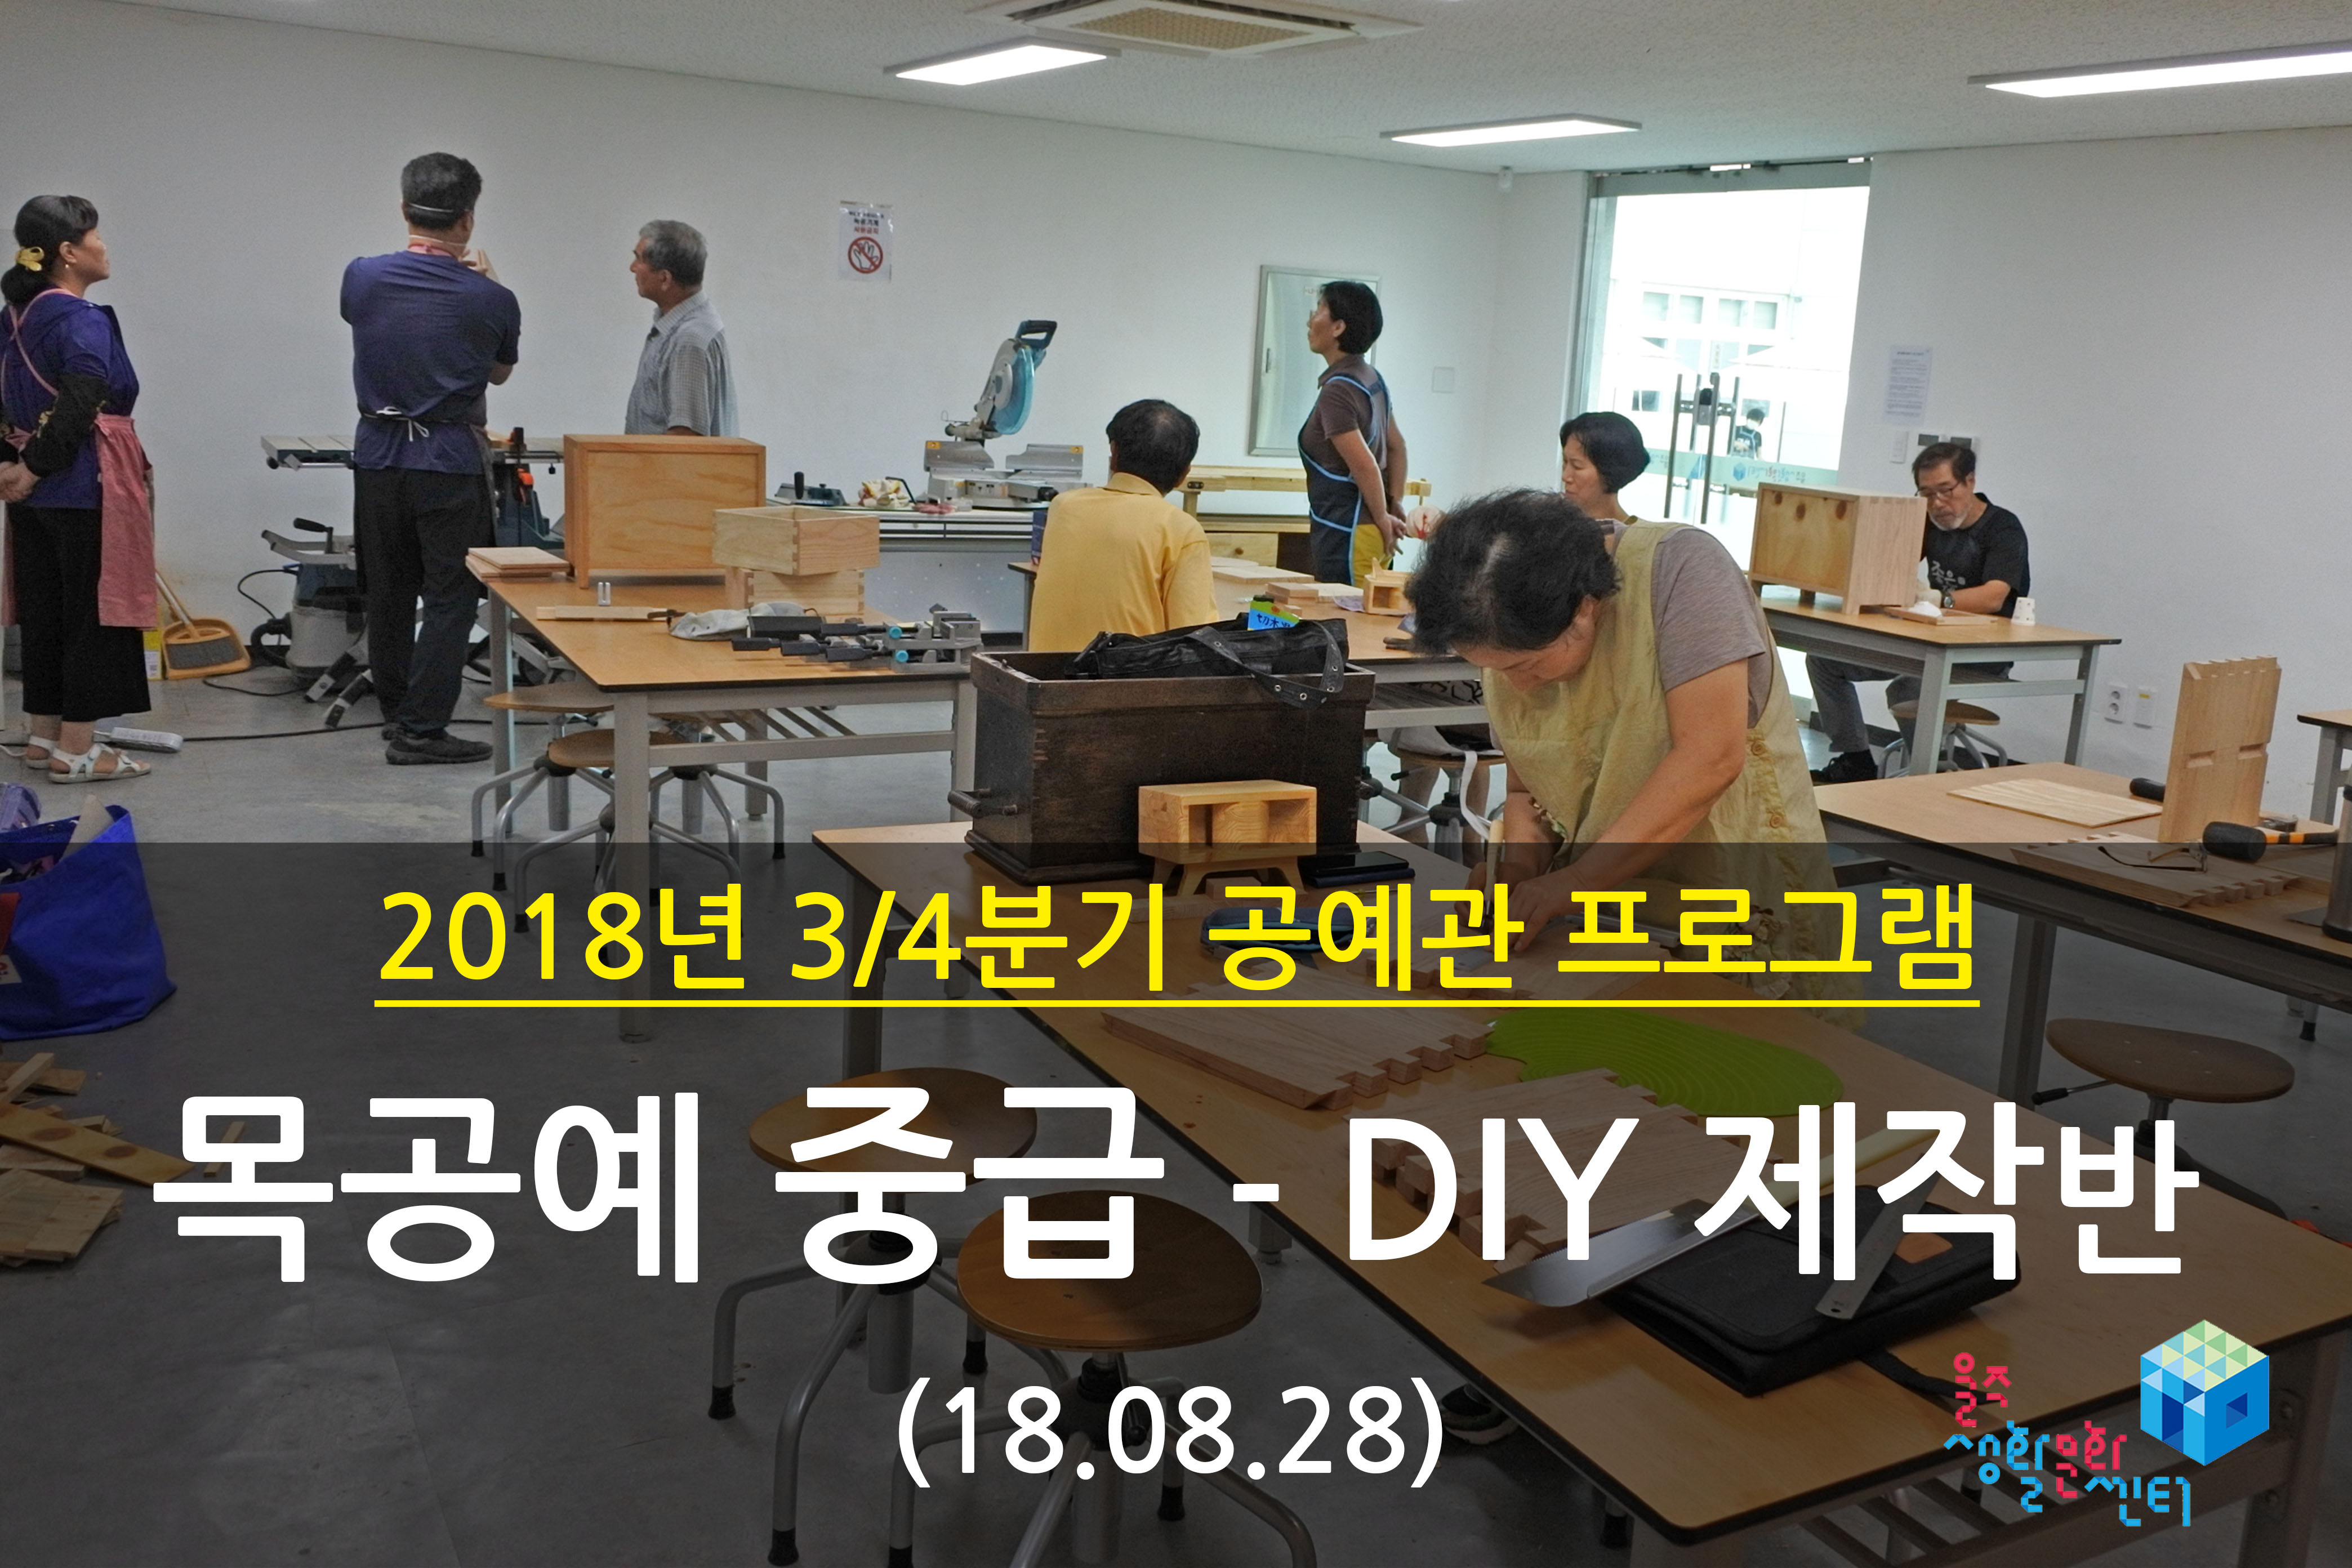 2018.08.28 _ 목공예 중급 - DIY 제작반 _ 3/4분기 8주차 수업